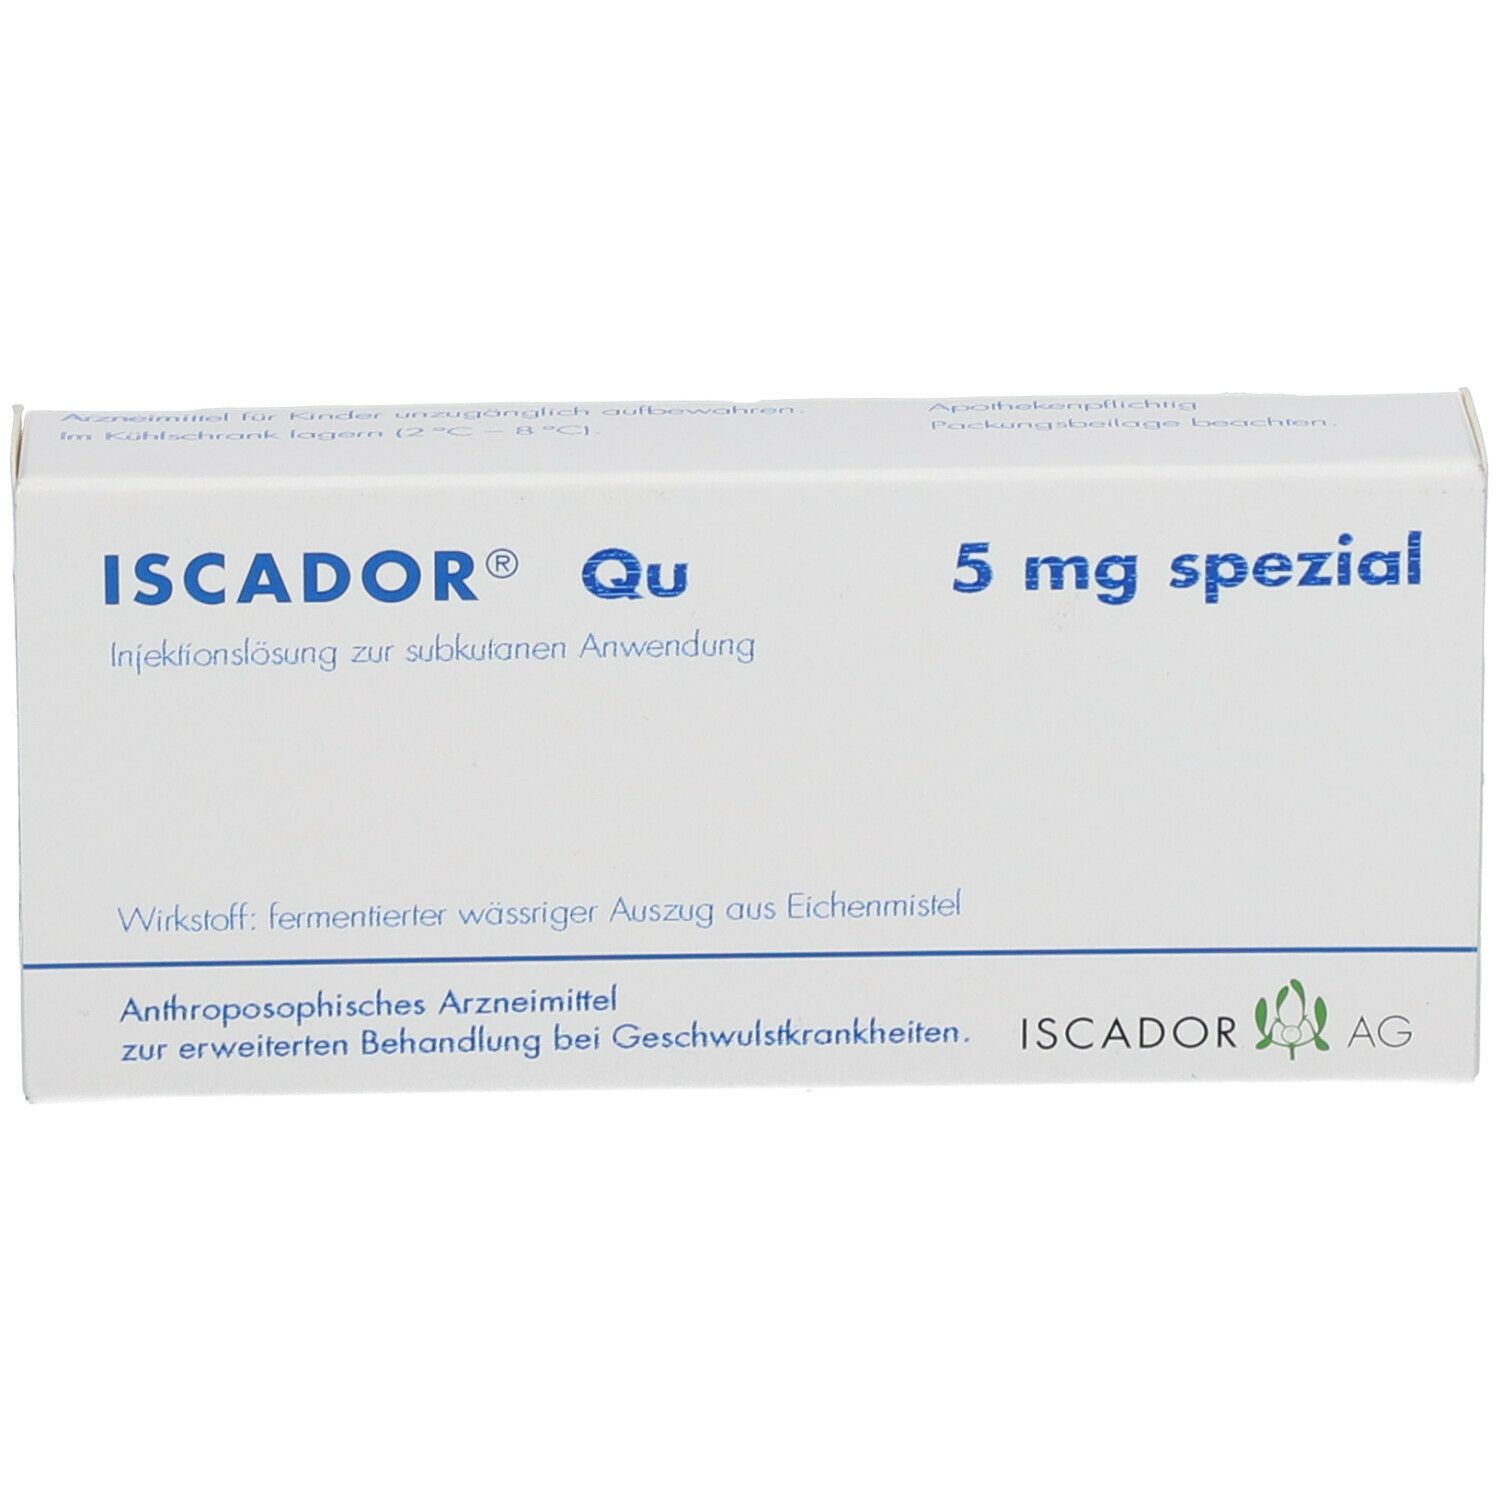 ISCADOR® Qu 5 mg Spezial